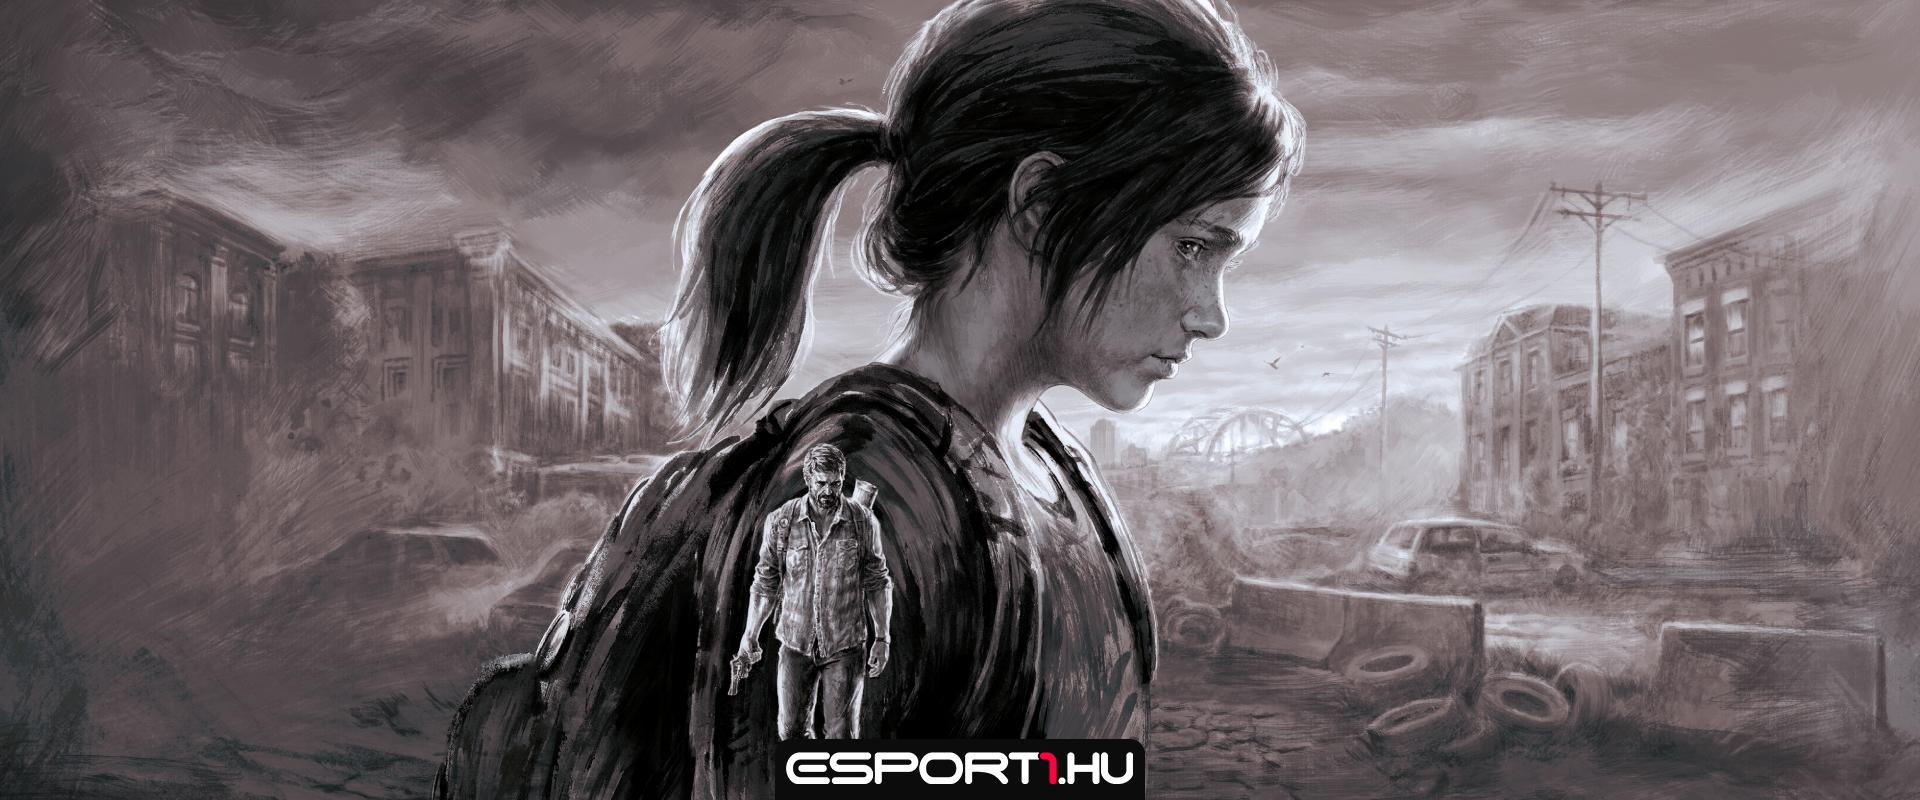 Befutott a The Last of Us sorozat első teljes értékű előzetese